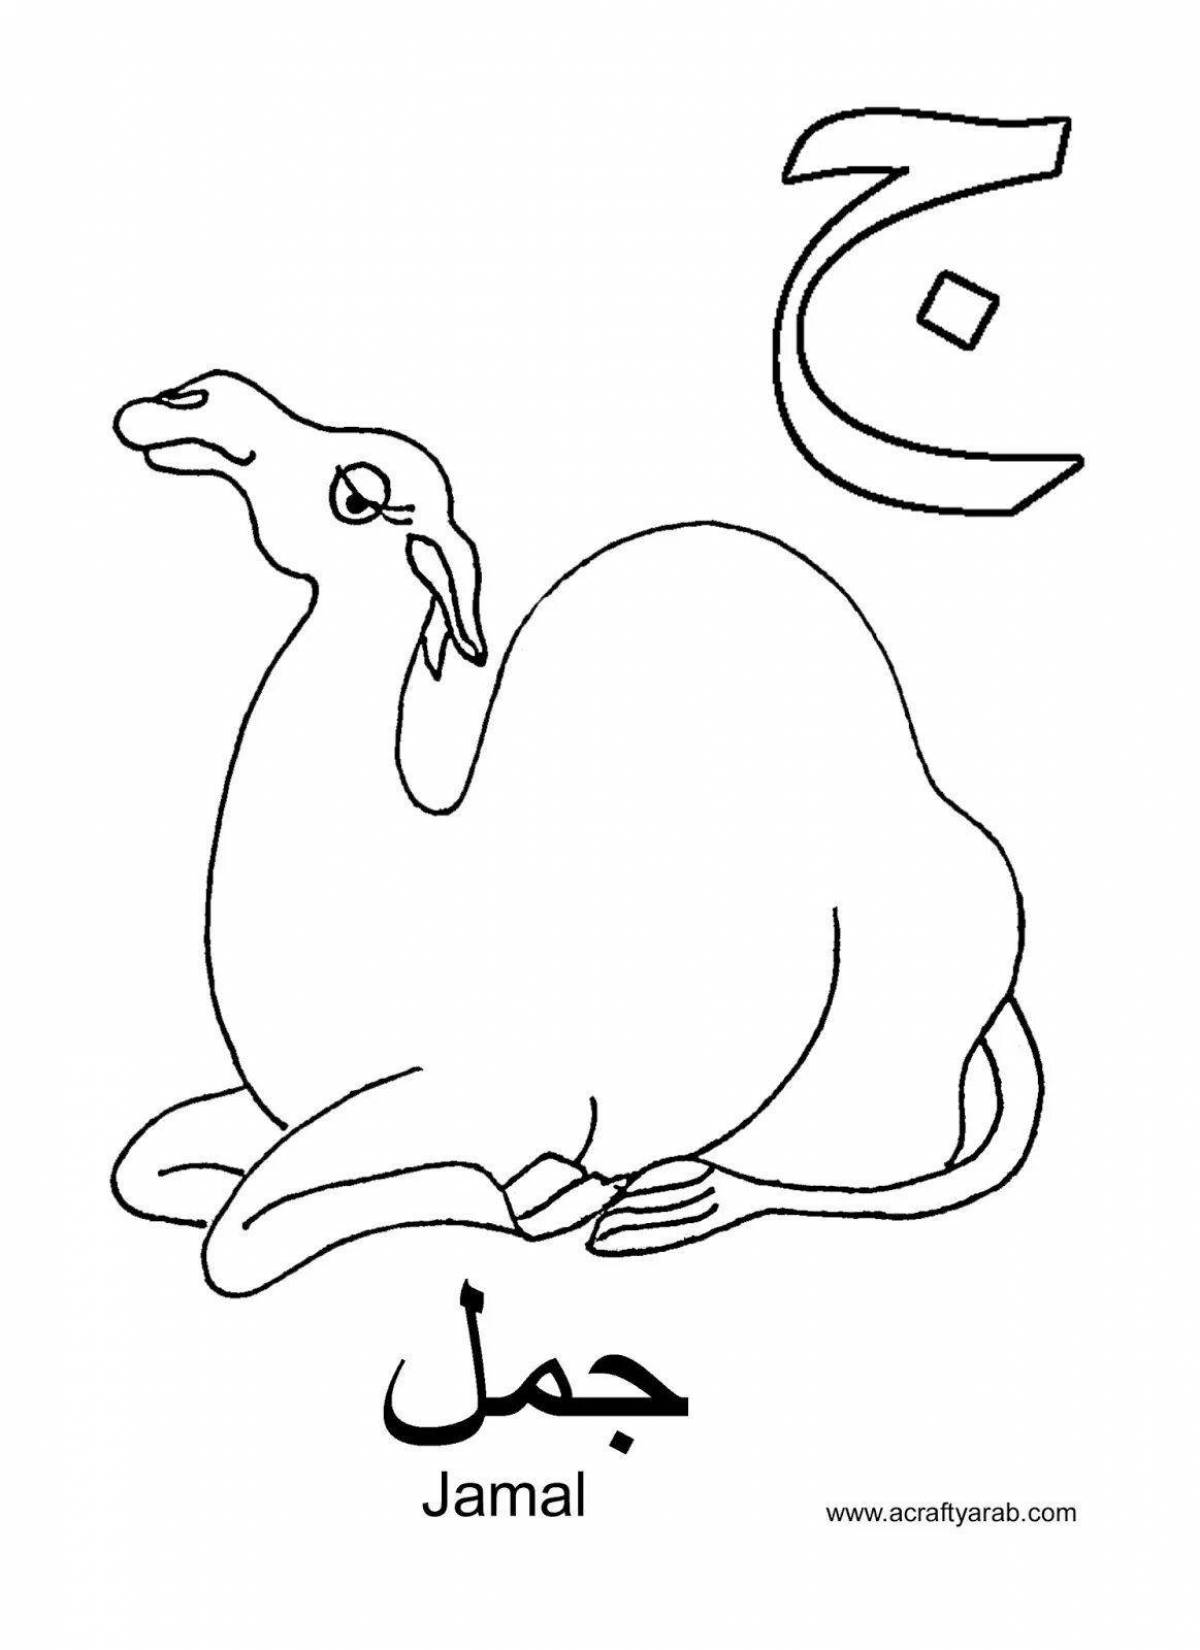 Красочная страница раскраски арабского алфавита для детей всех культур